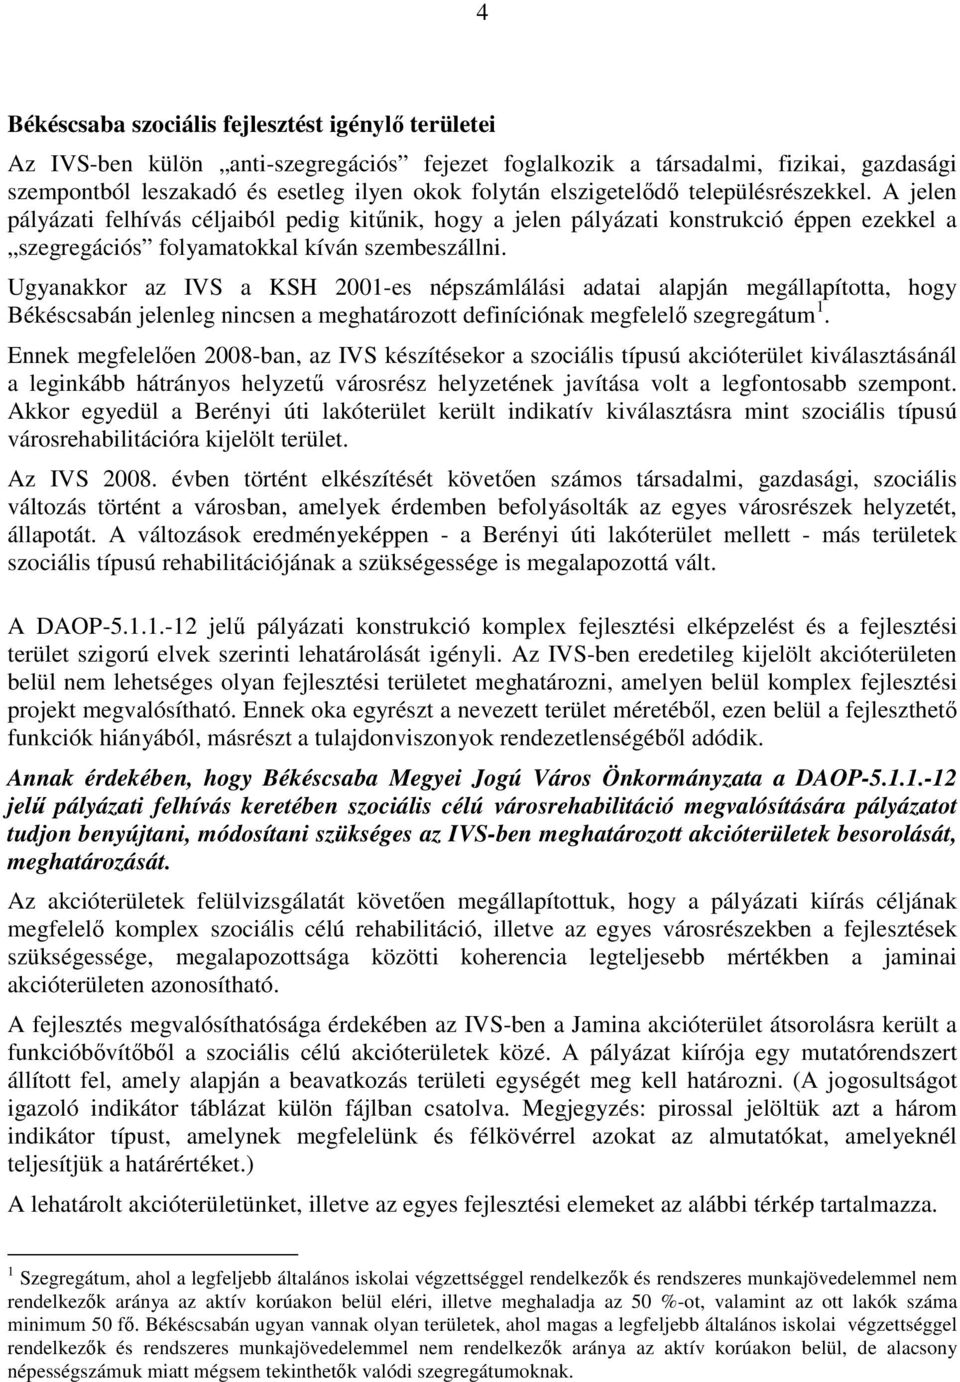 Ugyanakkor az IVS a KSH 2001-es népszámlálási adatai alapján megállapította, hogy Békéscsabán jelenleg nincsen a meghatározott definíciónak megfelelı szegregátum 1.